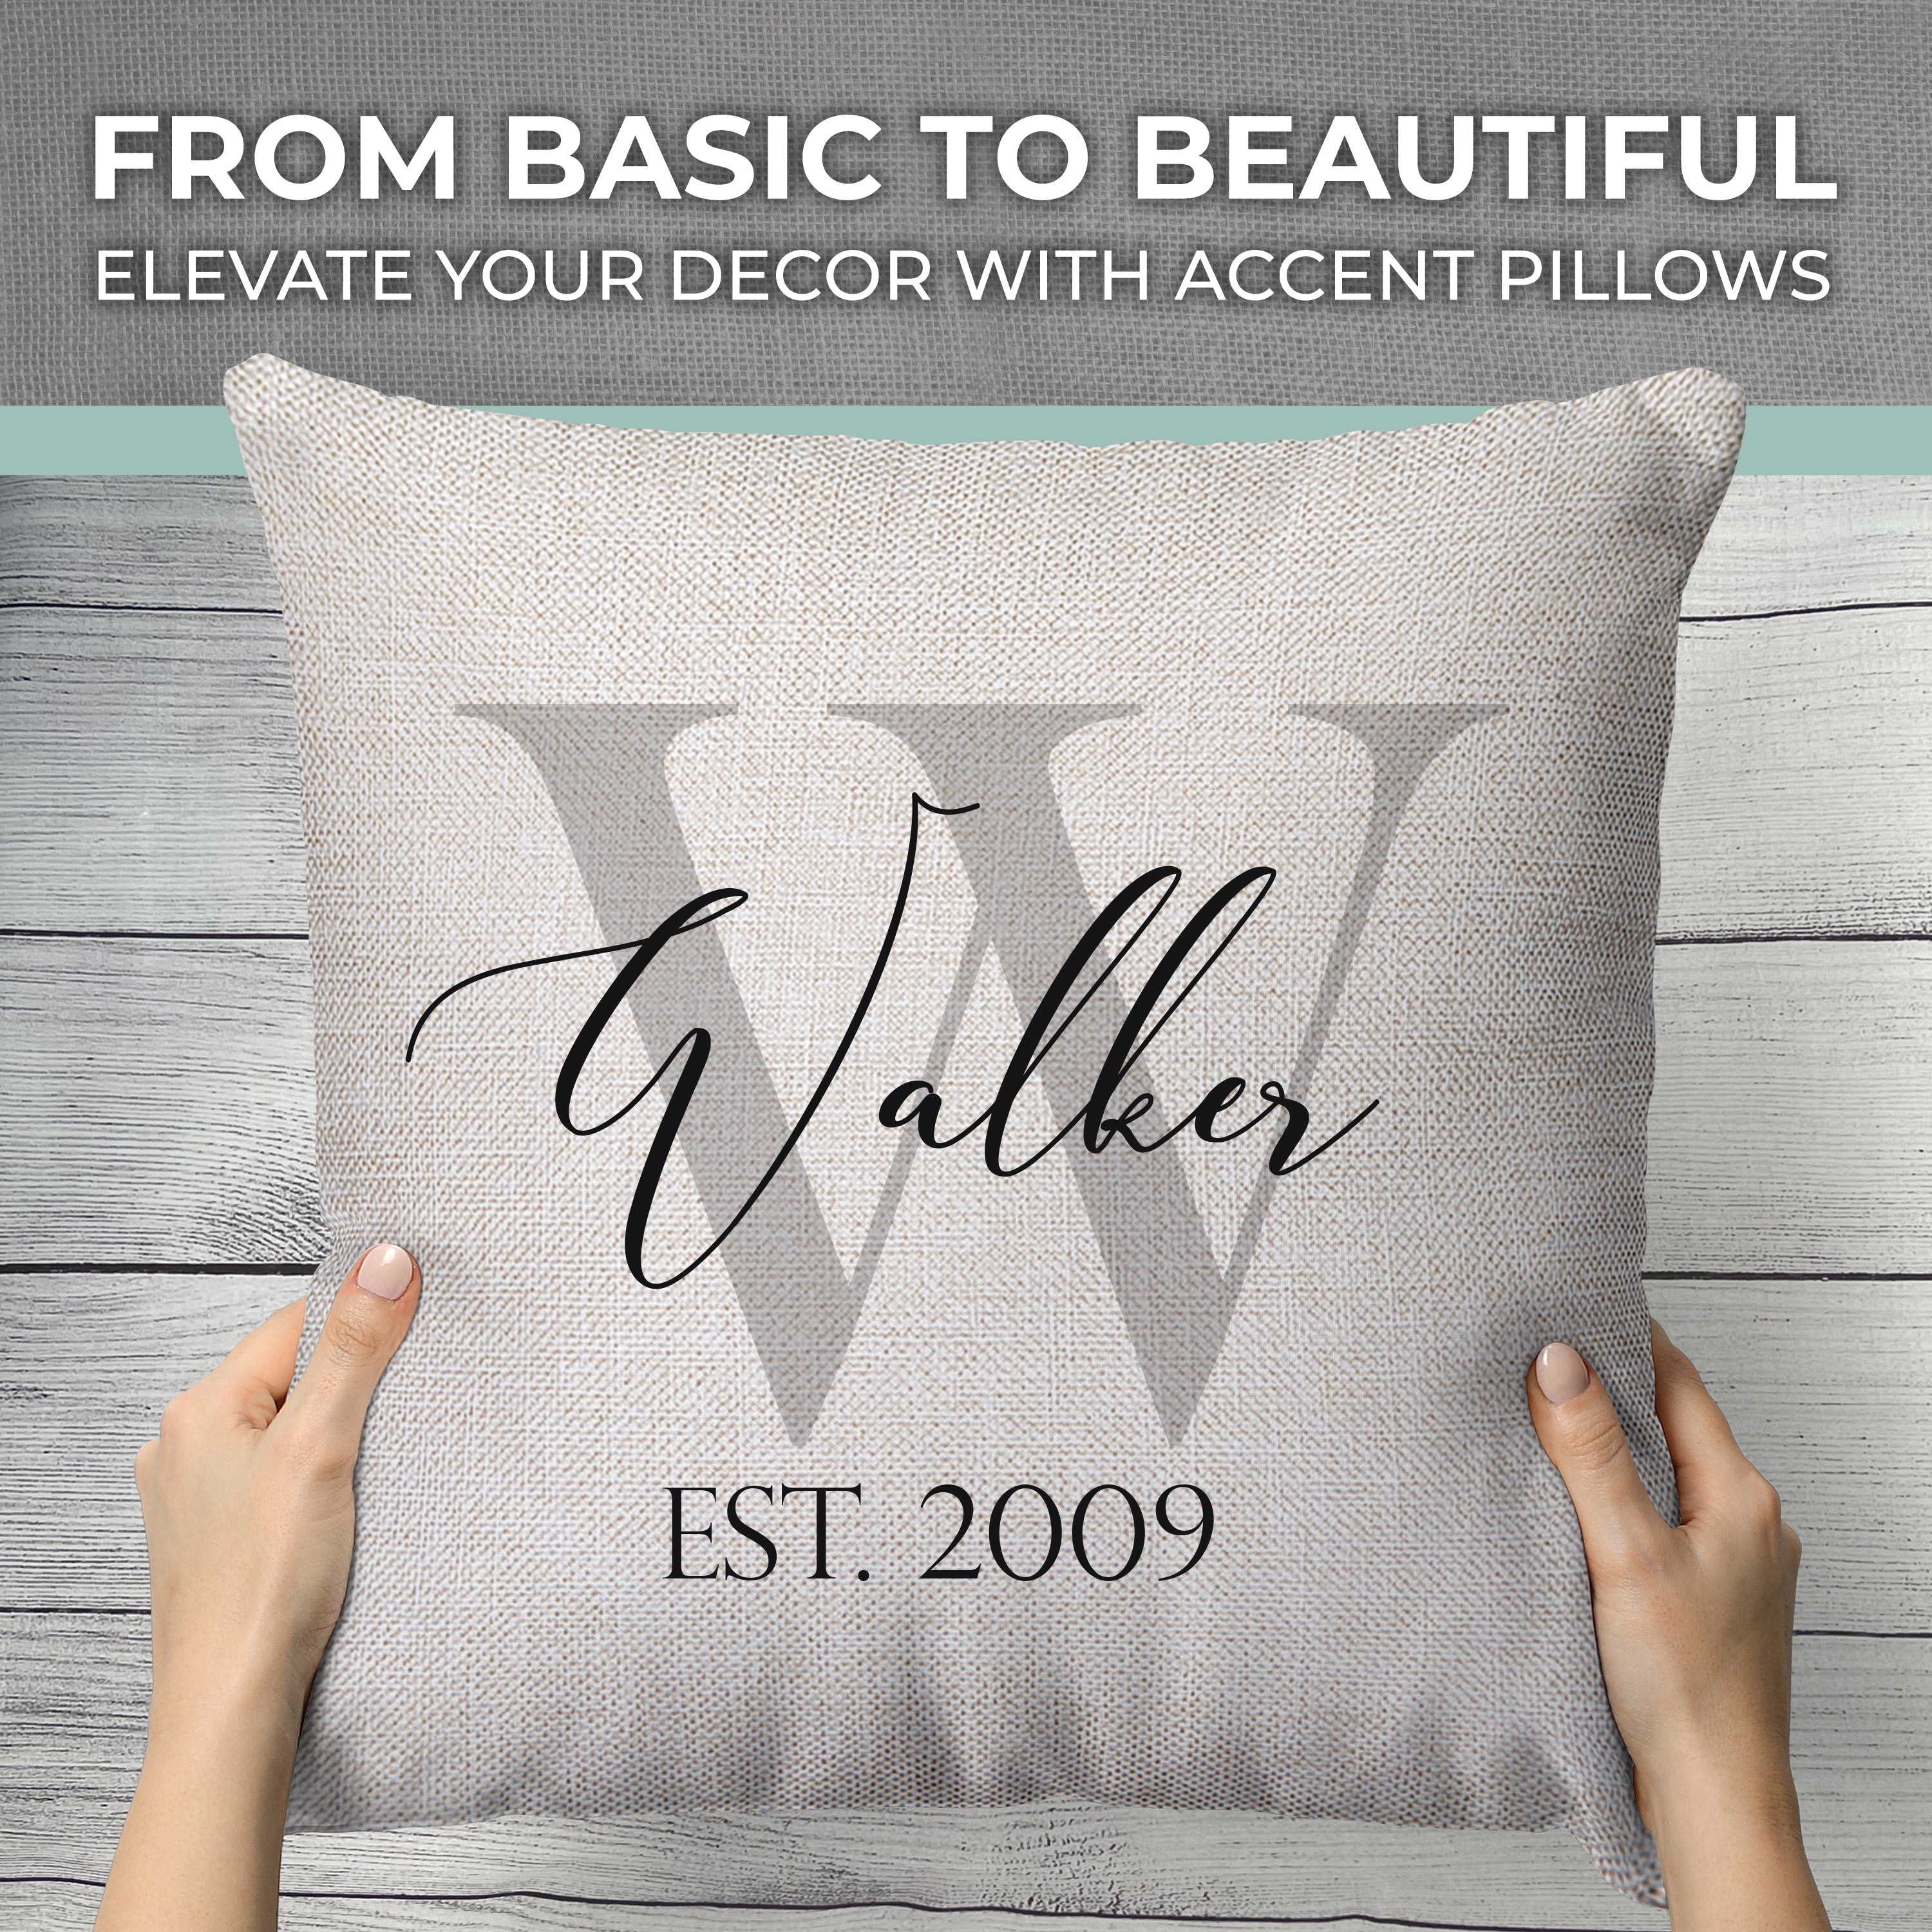 Design & Order Beautiful Throw Pillows